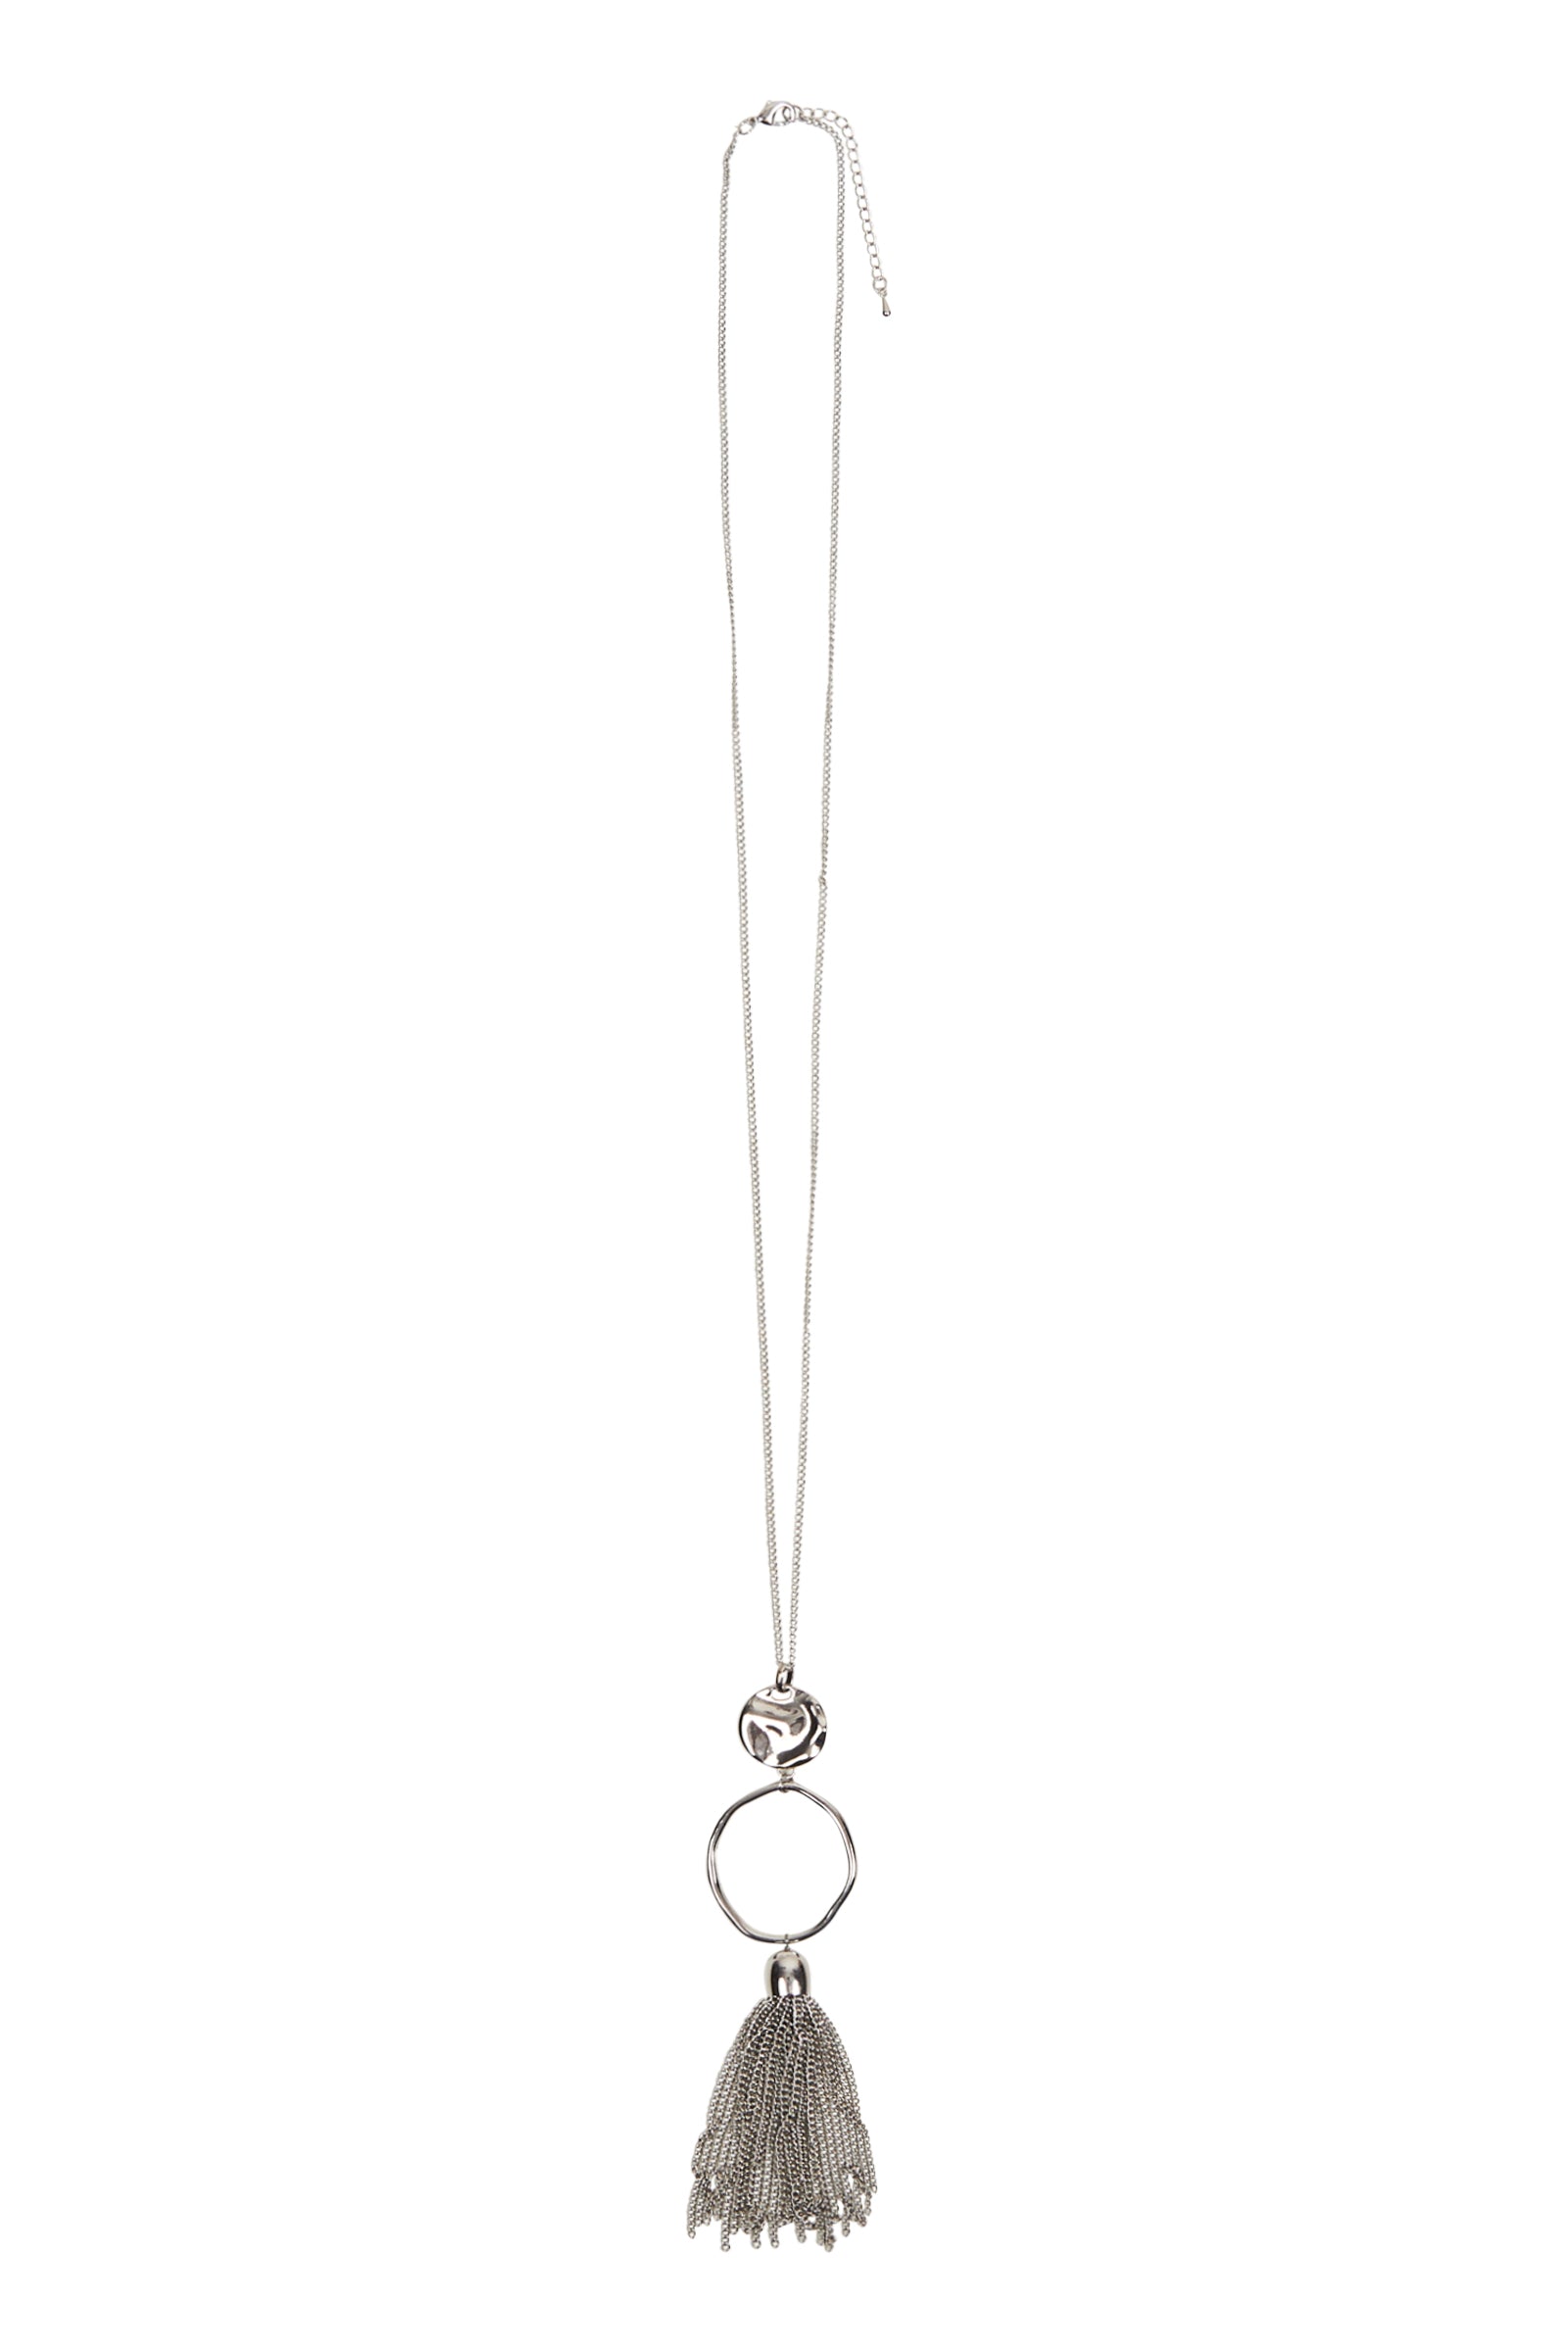 Meta Drop Necklace - Silver - eb&ive Necklace